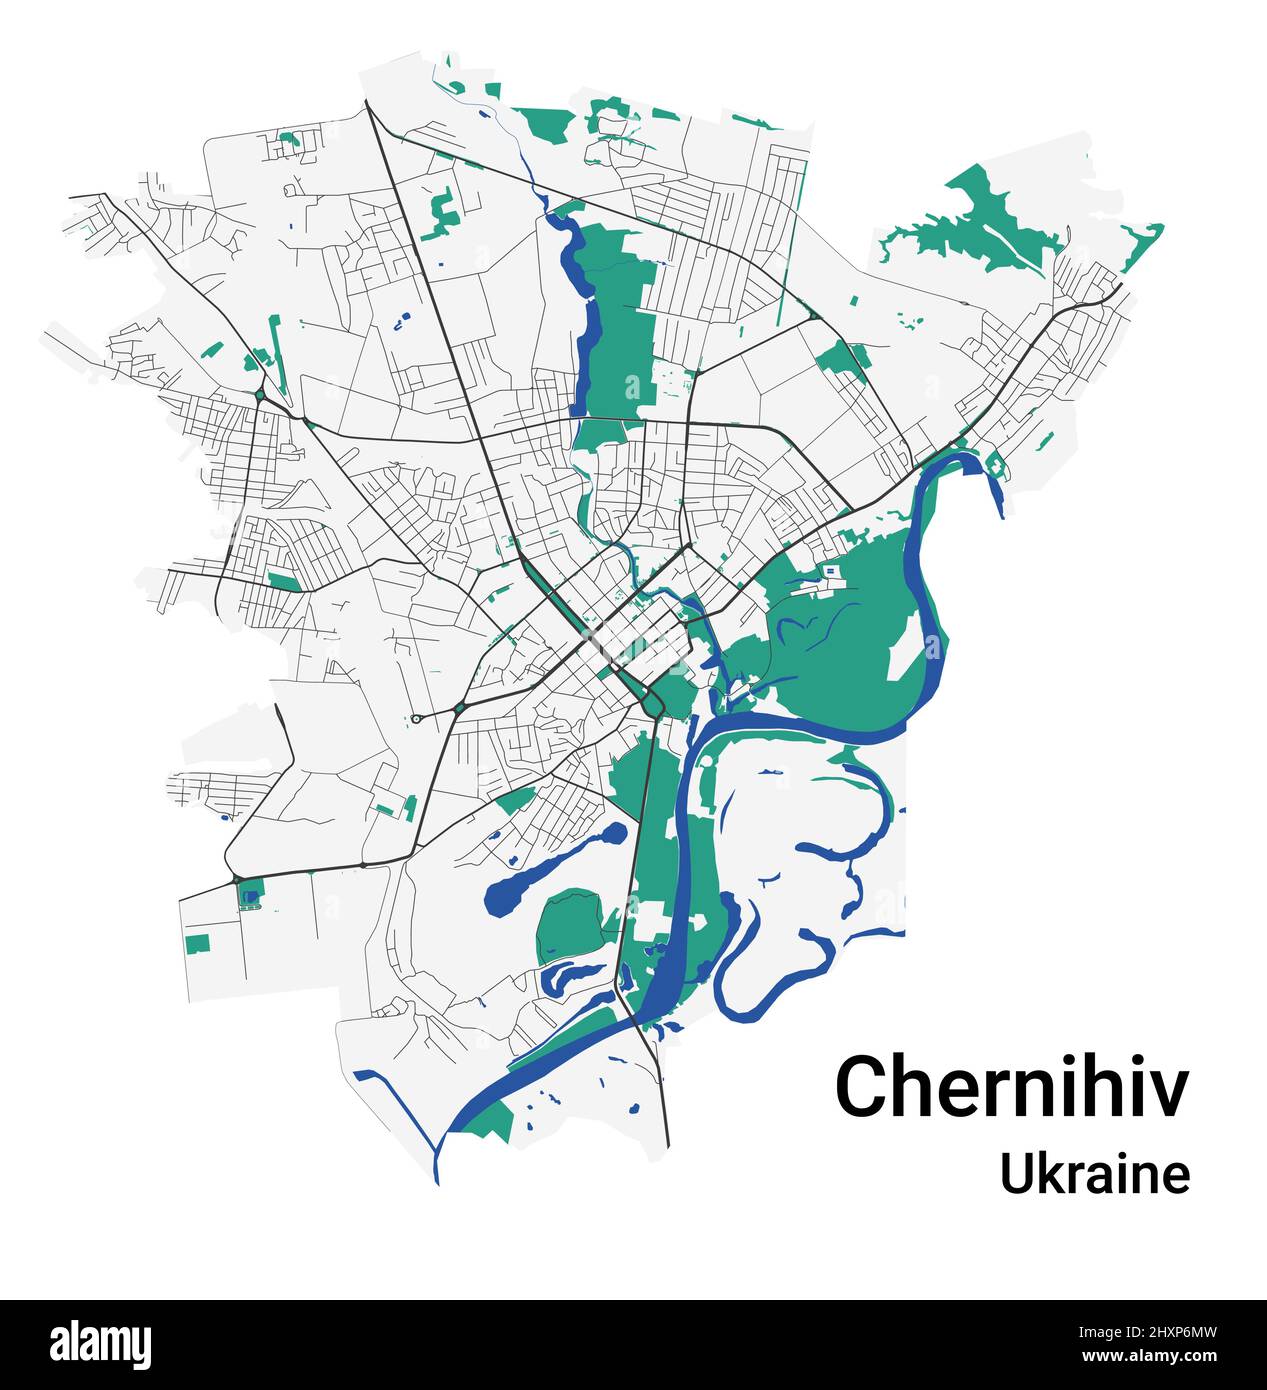 Mappa vettoriale di Chernihiv. Mappa dettagliata dell'area amministrativa della città di Chernihiv. Panorama urbano. Illustrazione vettoriale senza royalty. Mappa stradale con autostrade Illustrazione Vettoriale